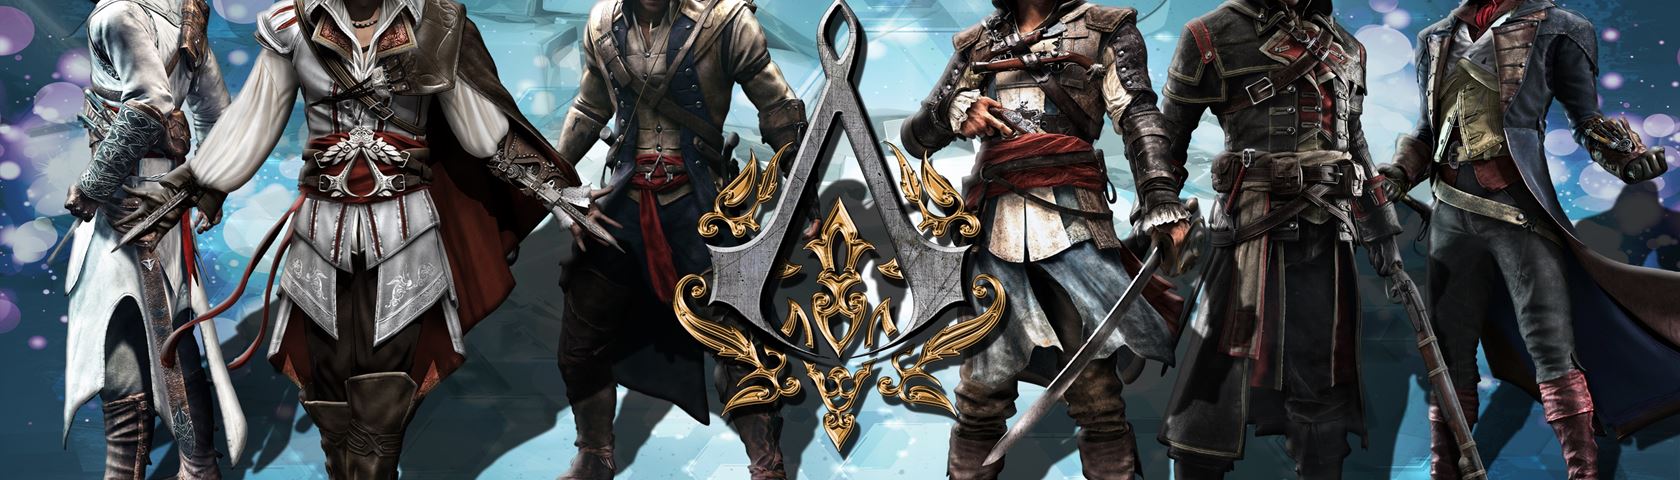 Assassins Creed Allstars 2014